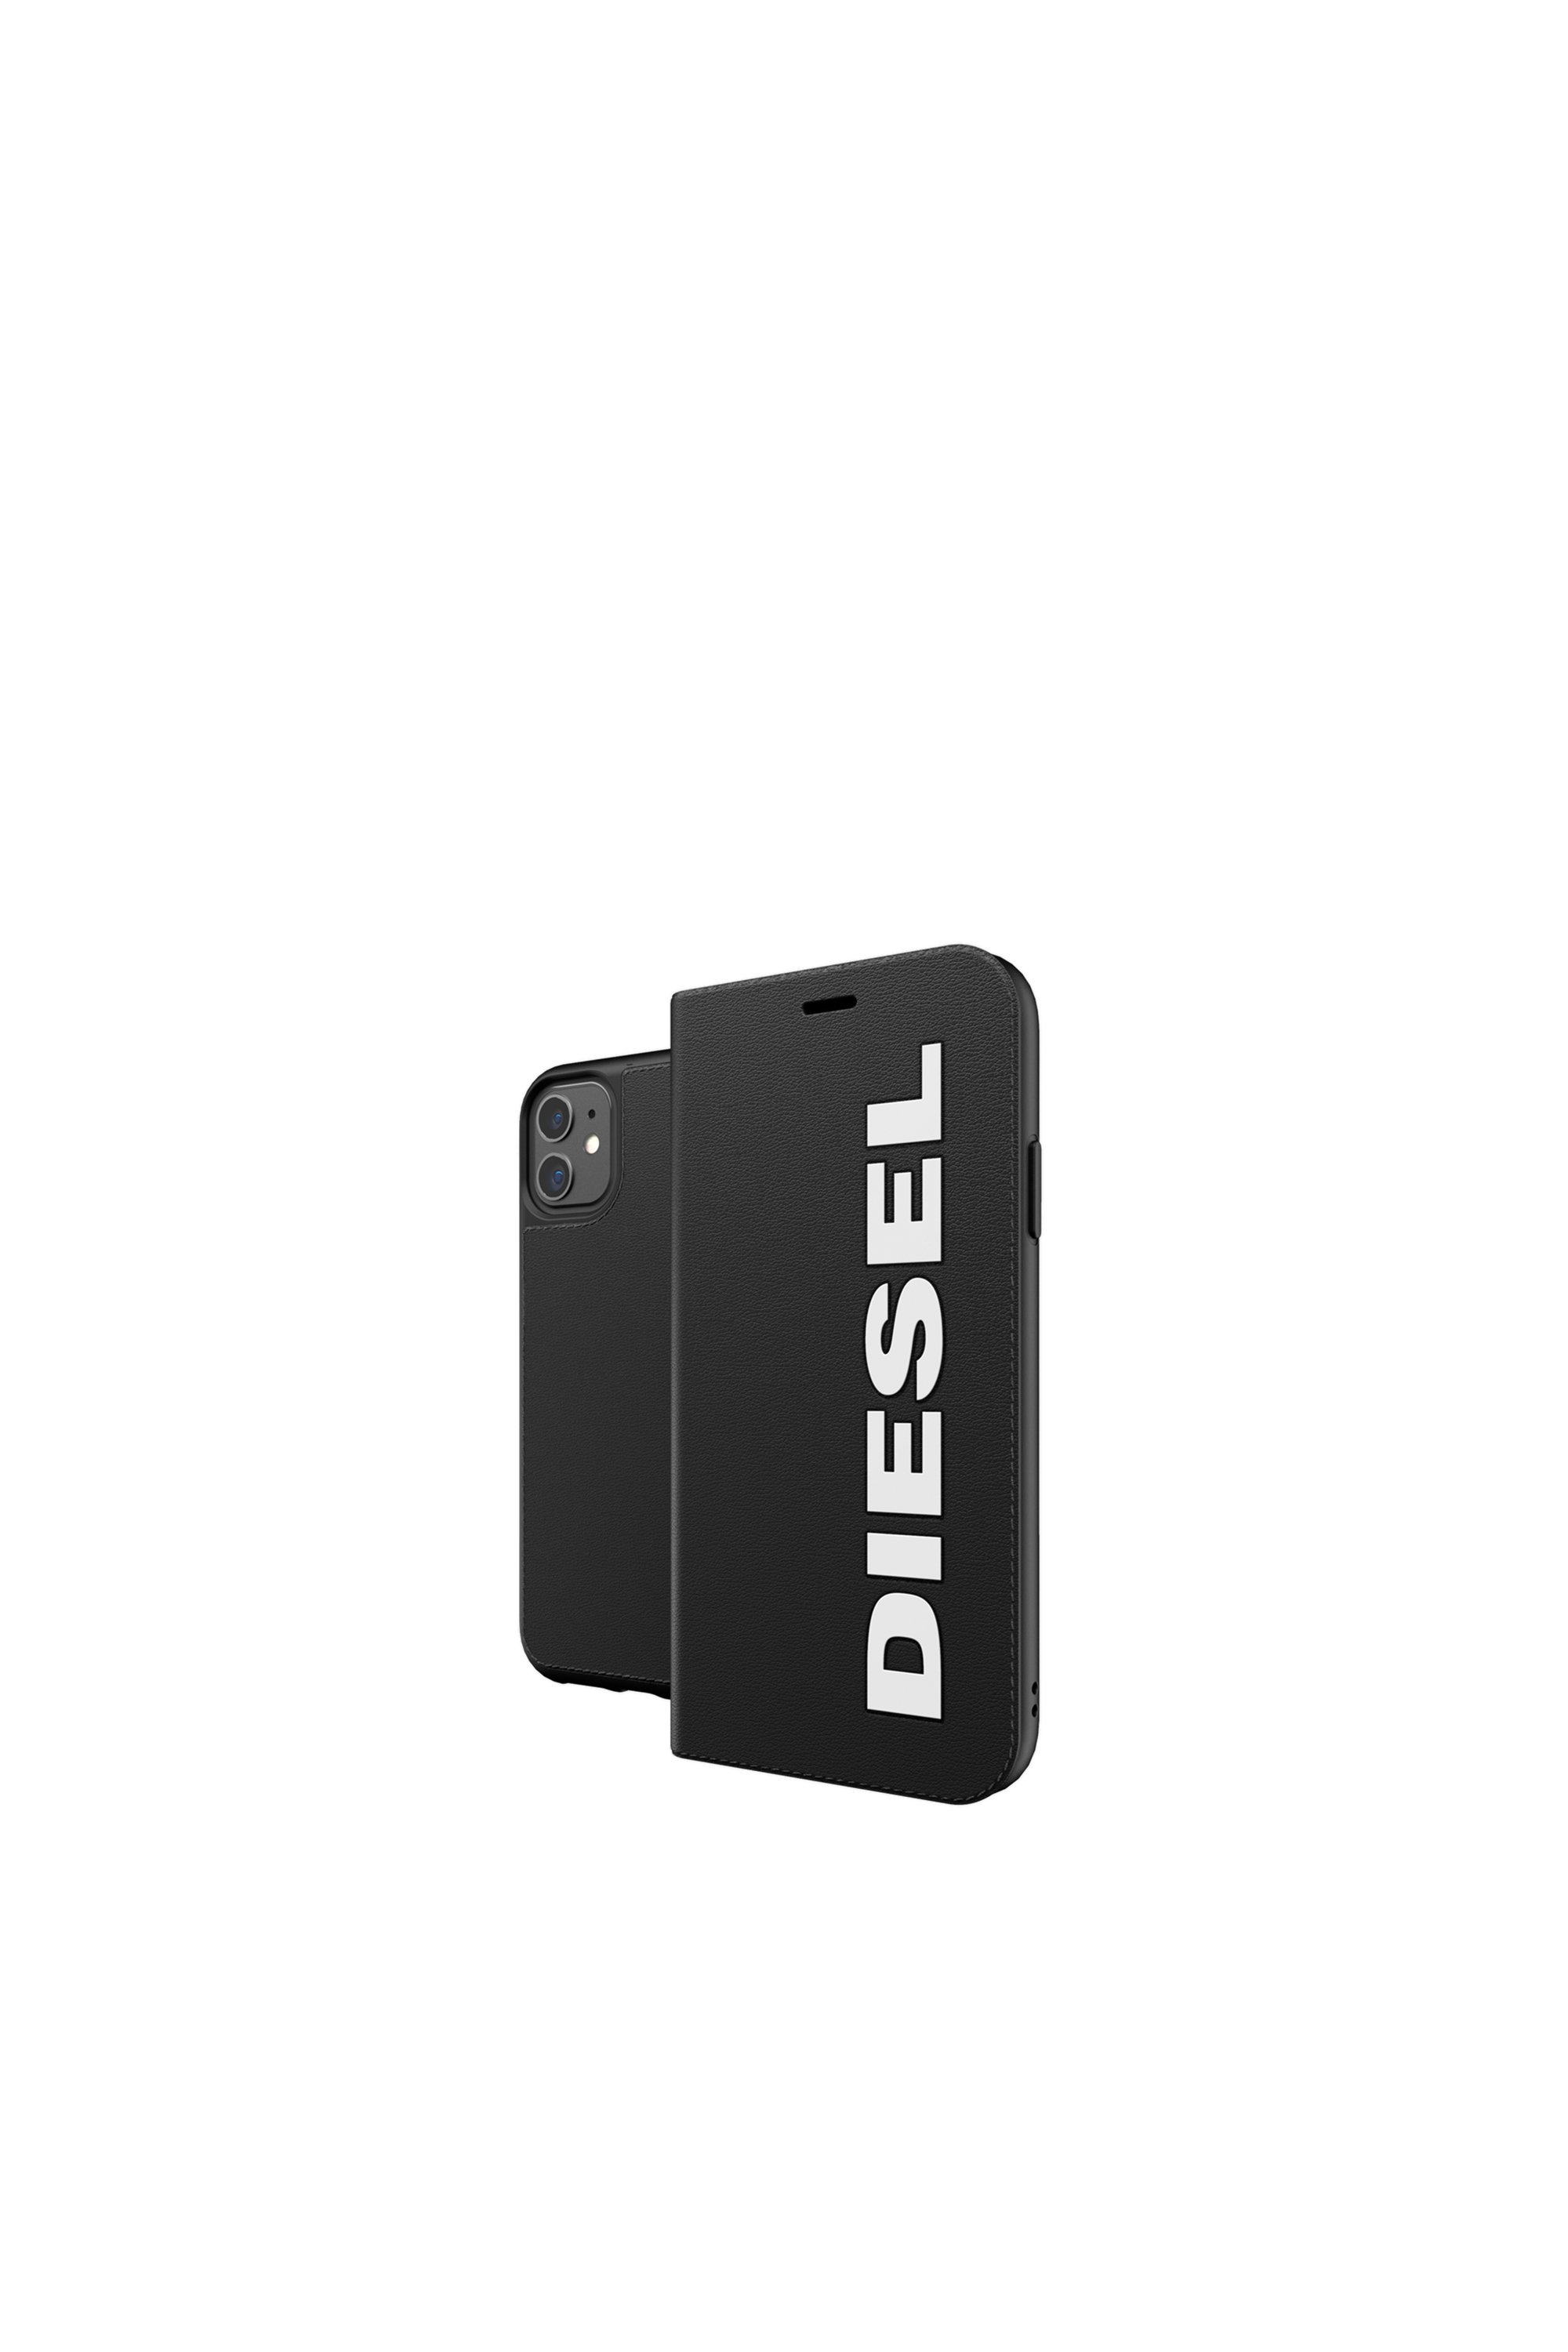 Diesel - 41973, Black - Image 1